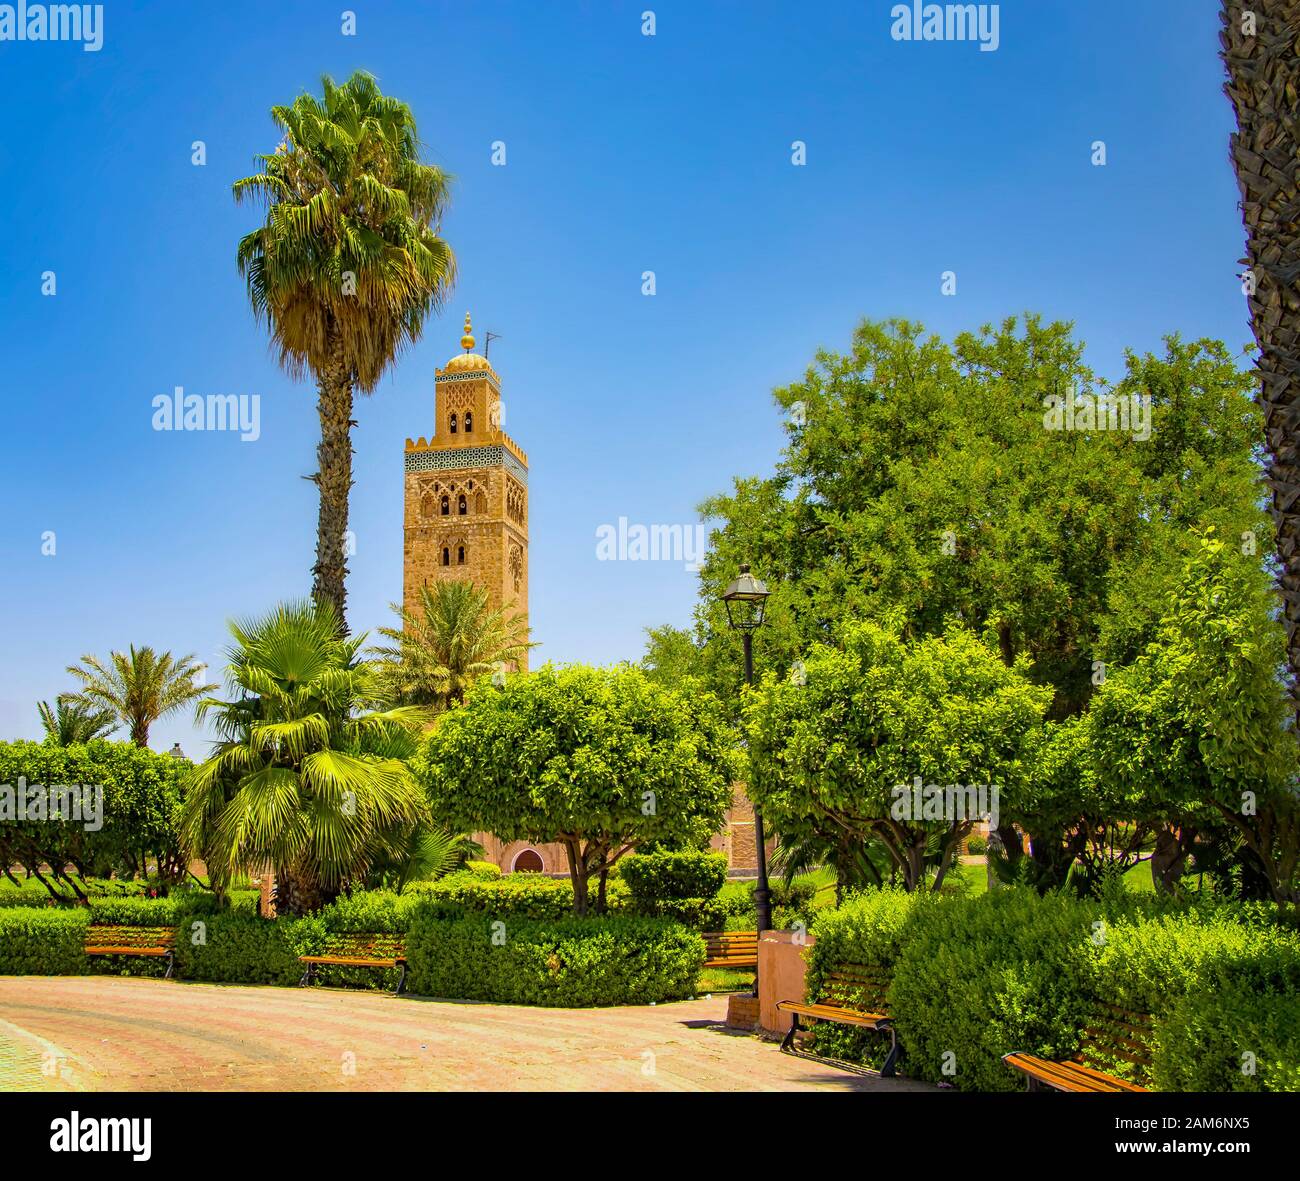 Mosquée de Koutoubia minaret pour médina de Marrakech, au Maroc. Il y a un magnifique jardin avec des palmiers. Blue Sky est dans l'arrière-plan. Banque D'Images